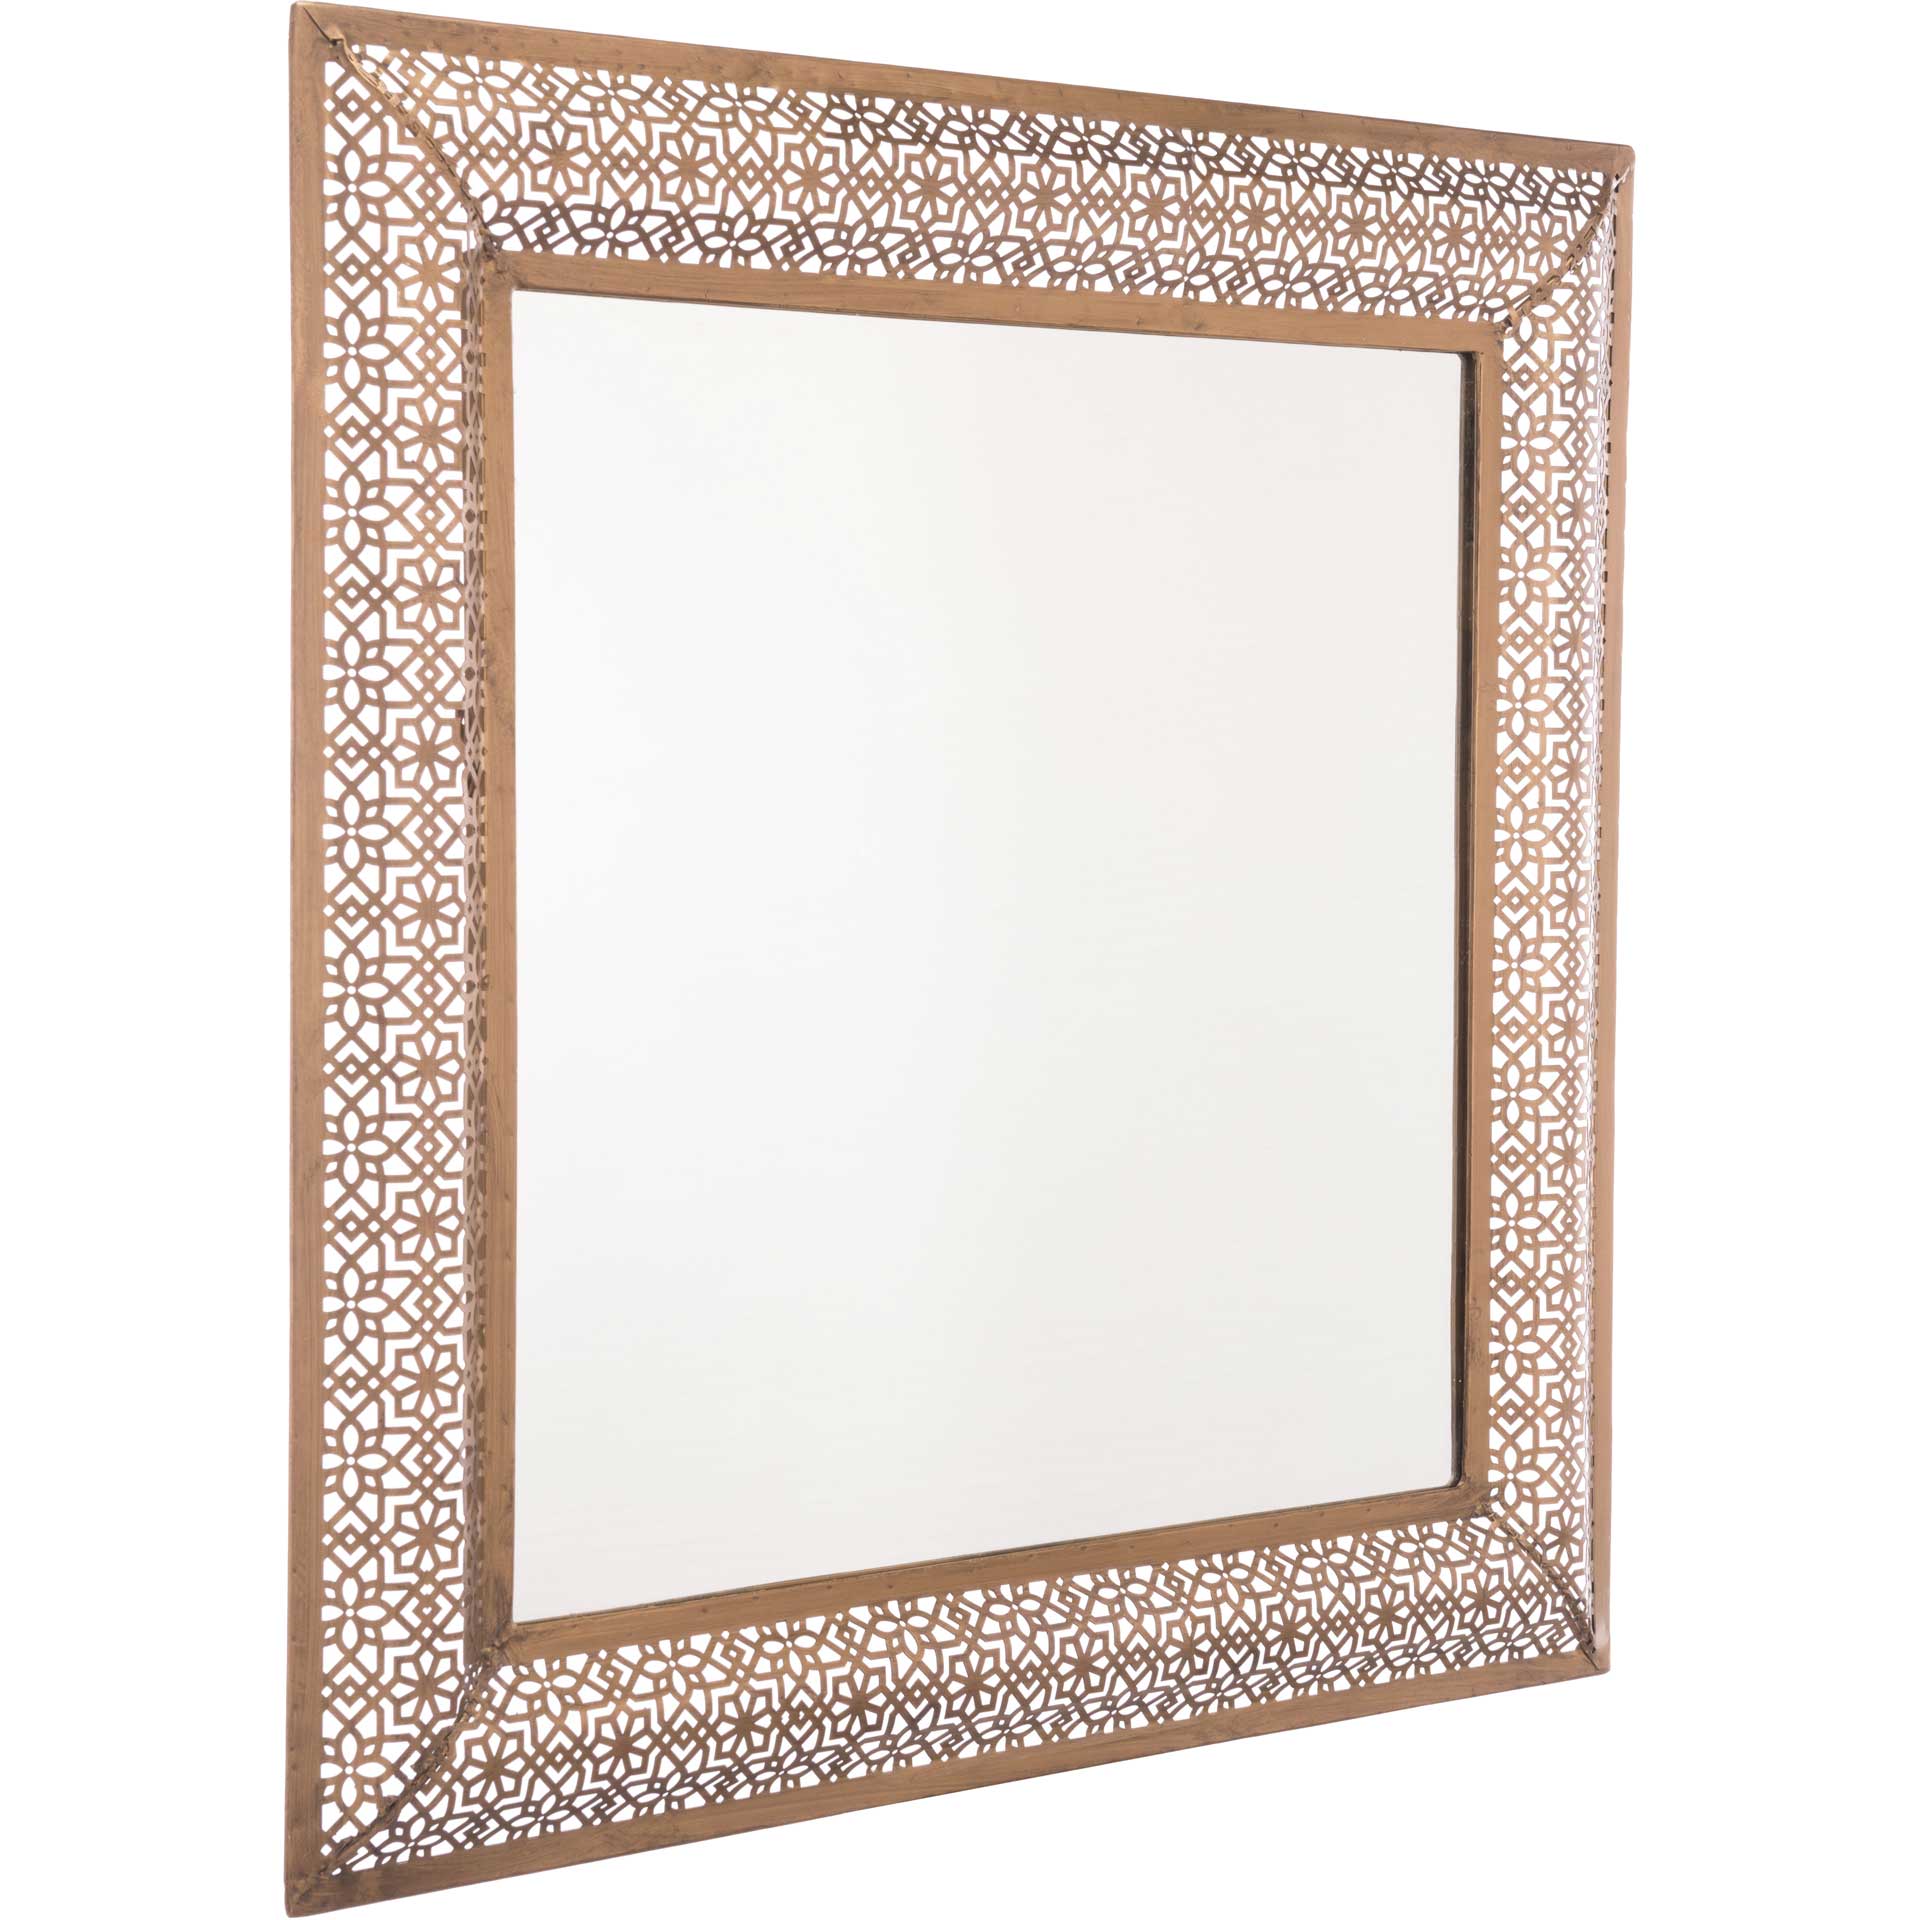 Moroccan Escamas Mirror Antique Gold